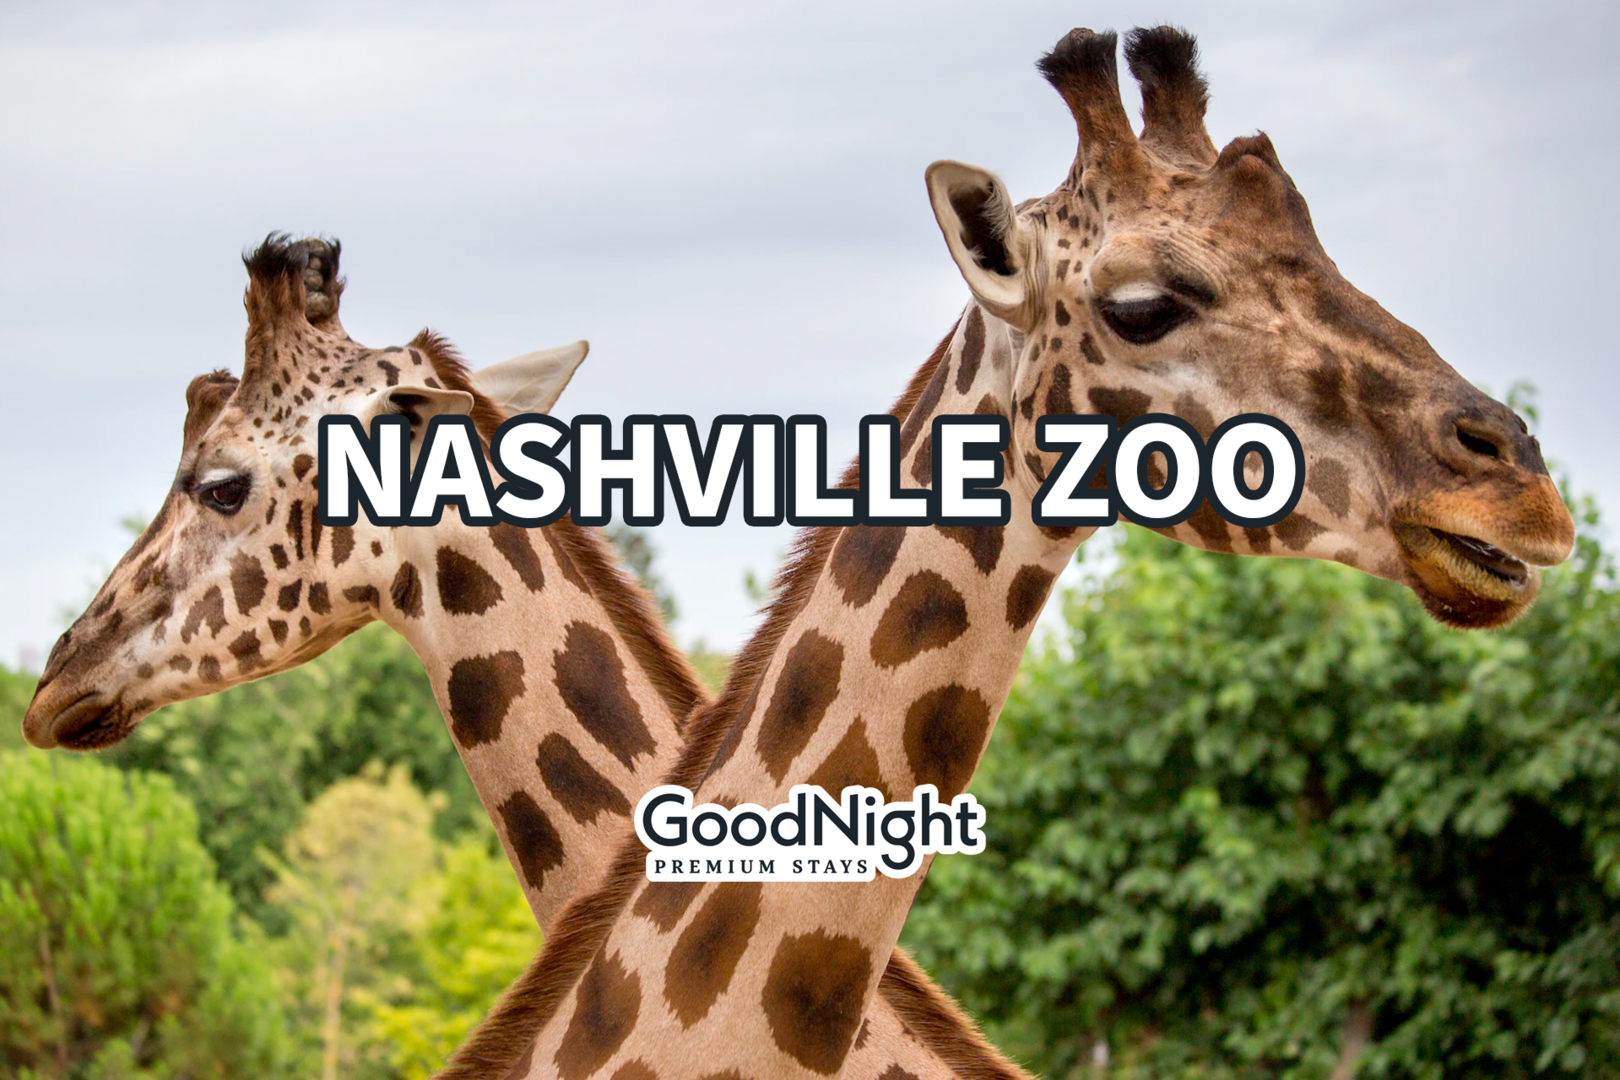 15 mins: Nashville Zoo